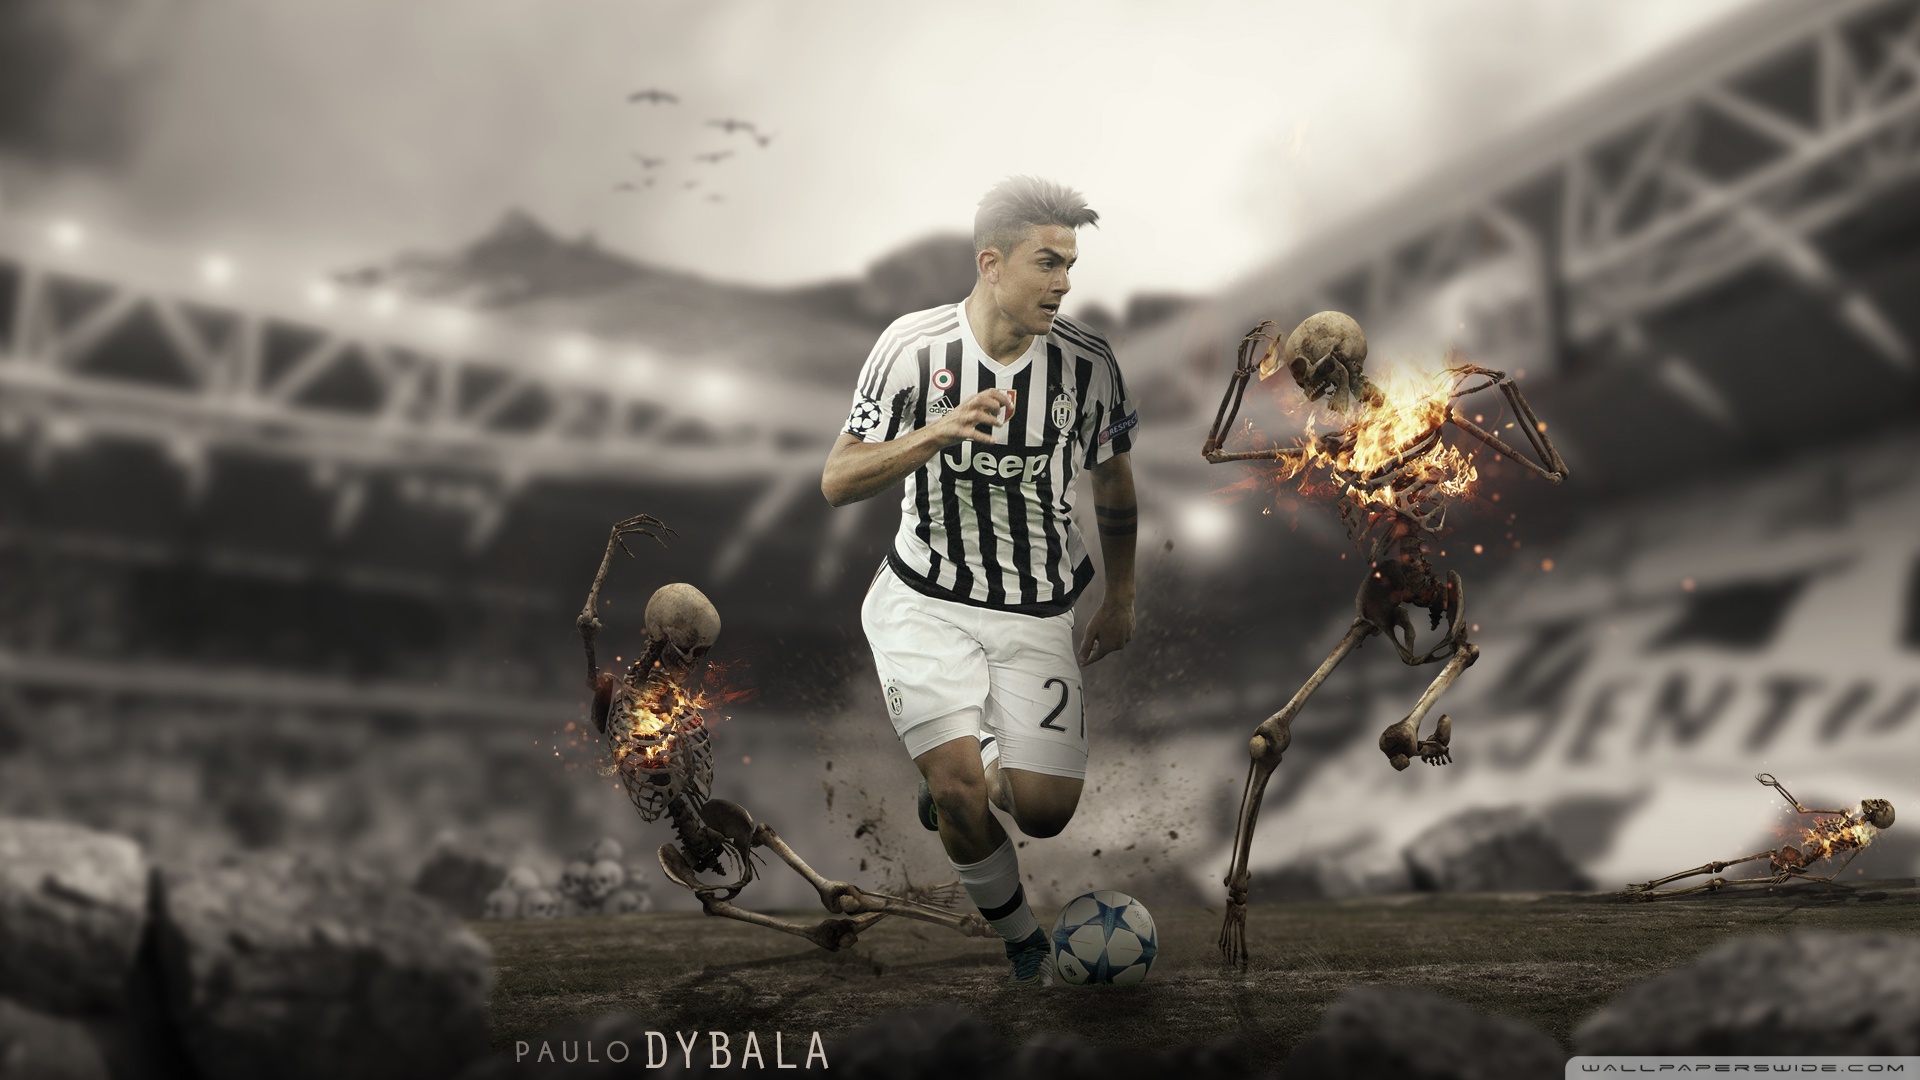 Best Paulo Dybala Wallpaper HD 1920x1080